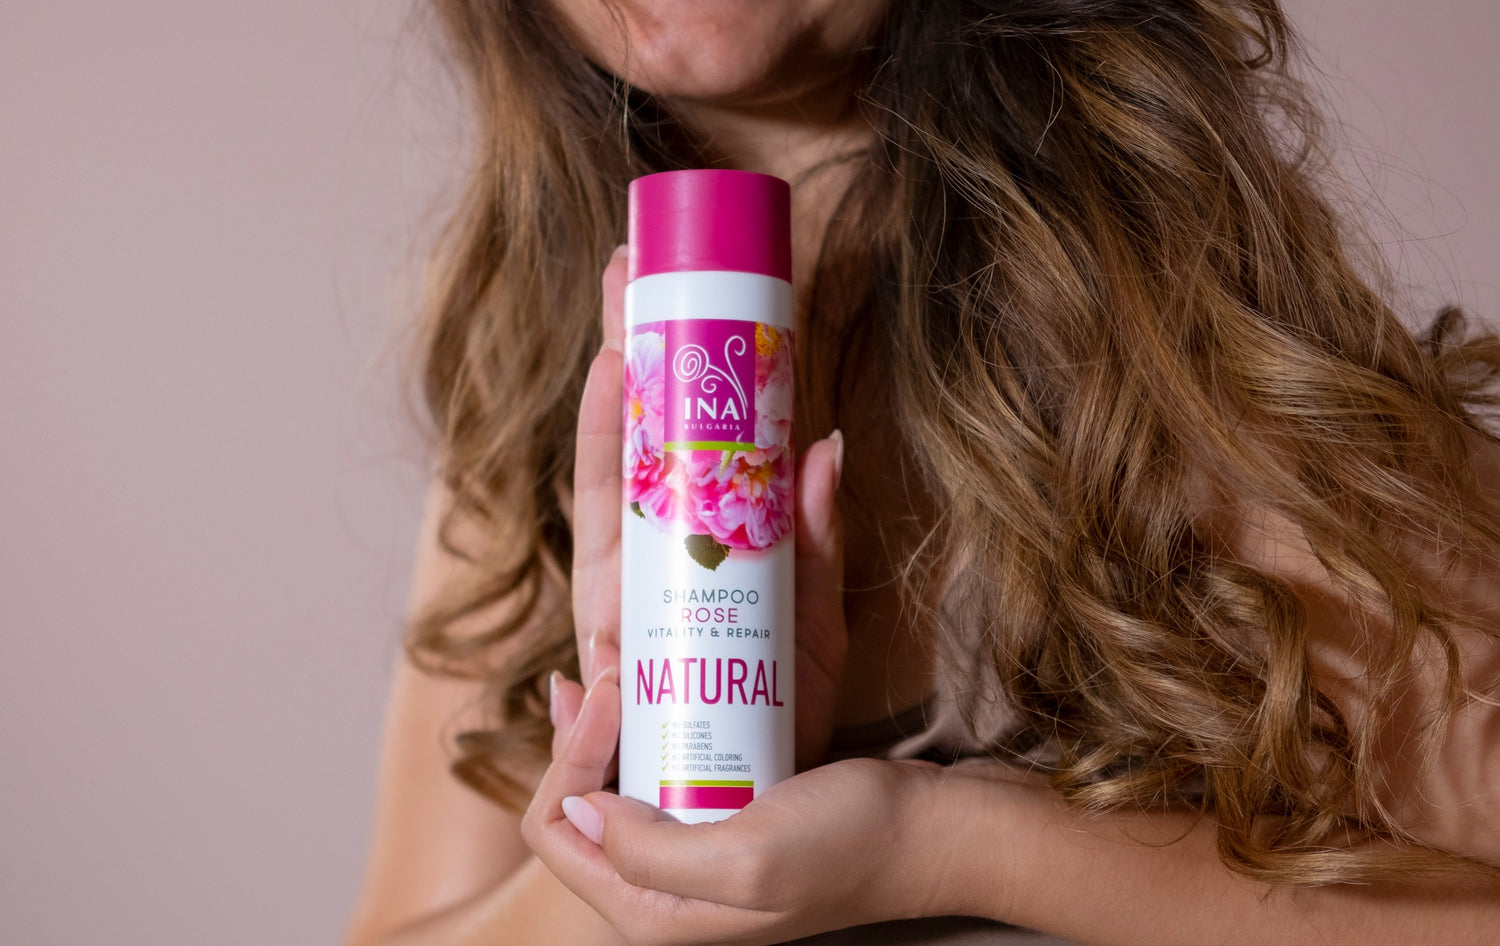 Magisches Rosen-shampoo gegen trockene und beschädigte haare - mit dem teuersten Öl der Welt